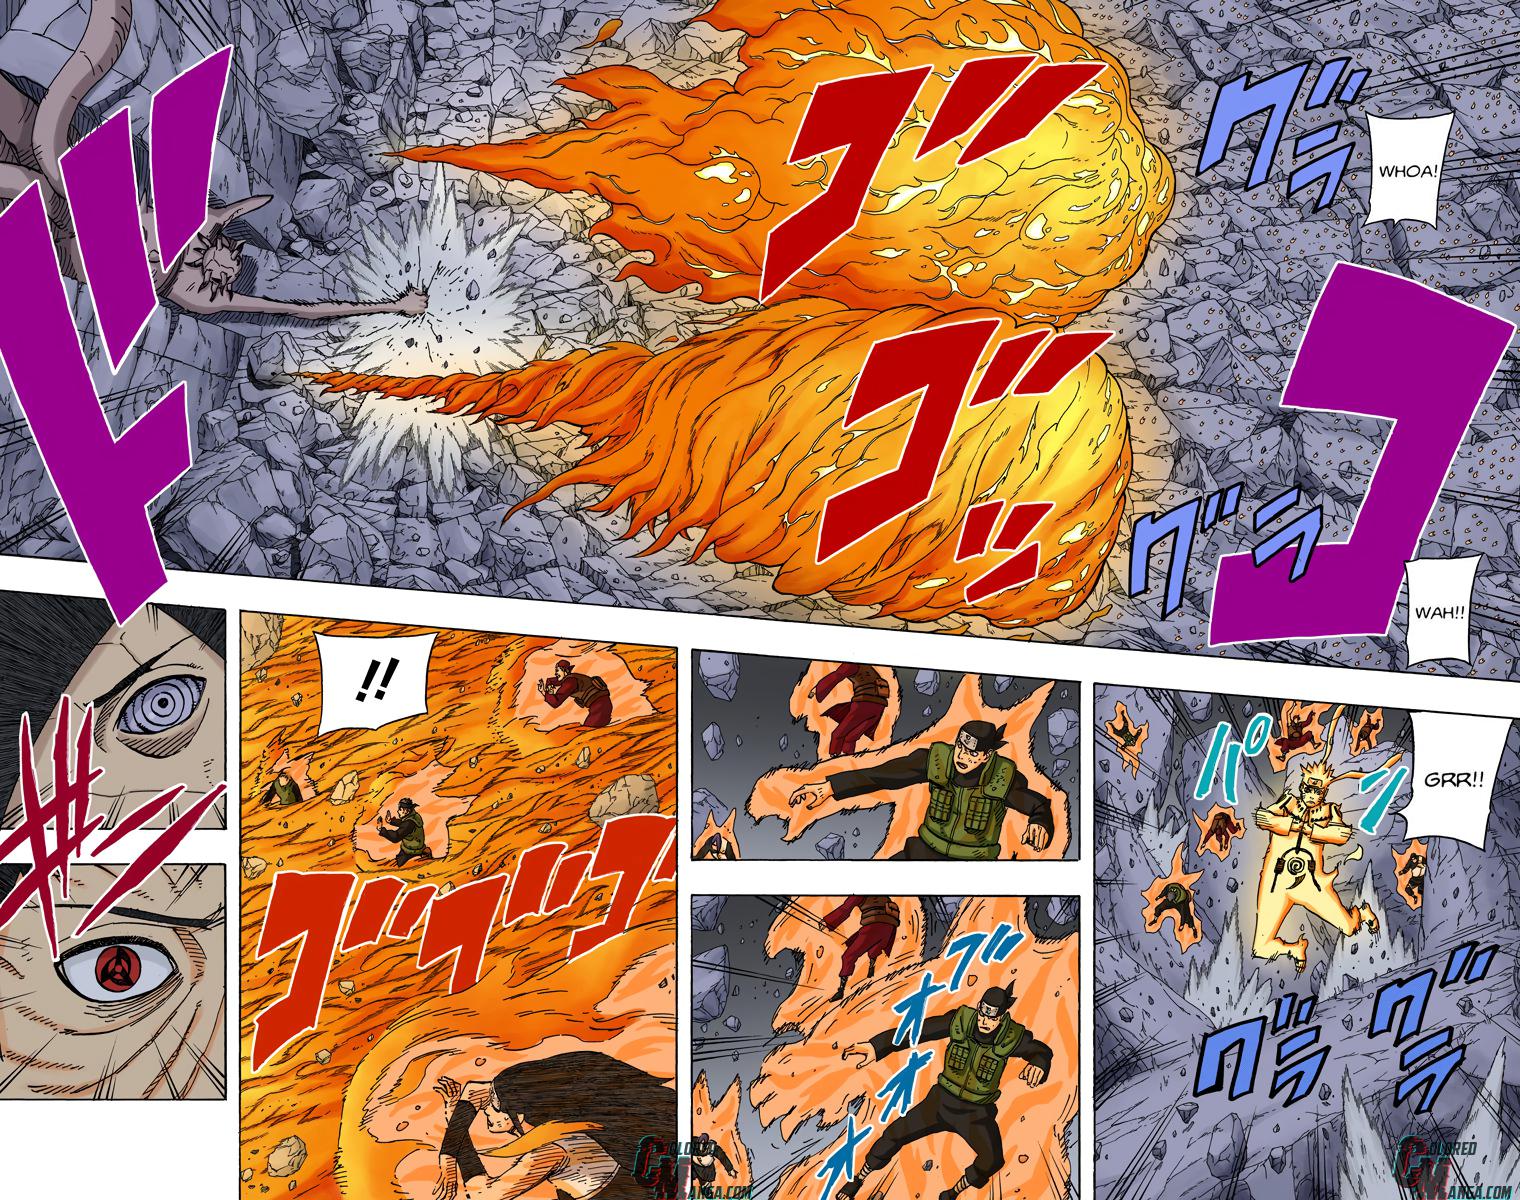 Como Itachi Edo se sairia no lugar de Obito? (e vice e versa) - Itachi vs Guy, Kakashi e Naruto - Obito vs Kabuto - Página 3 0628-008